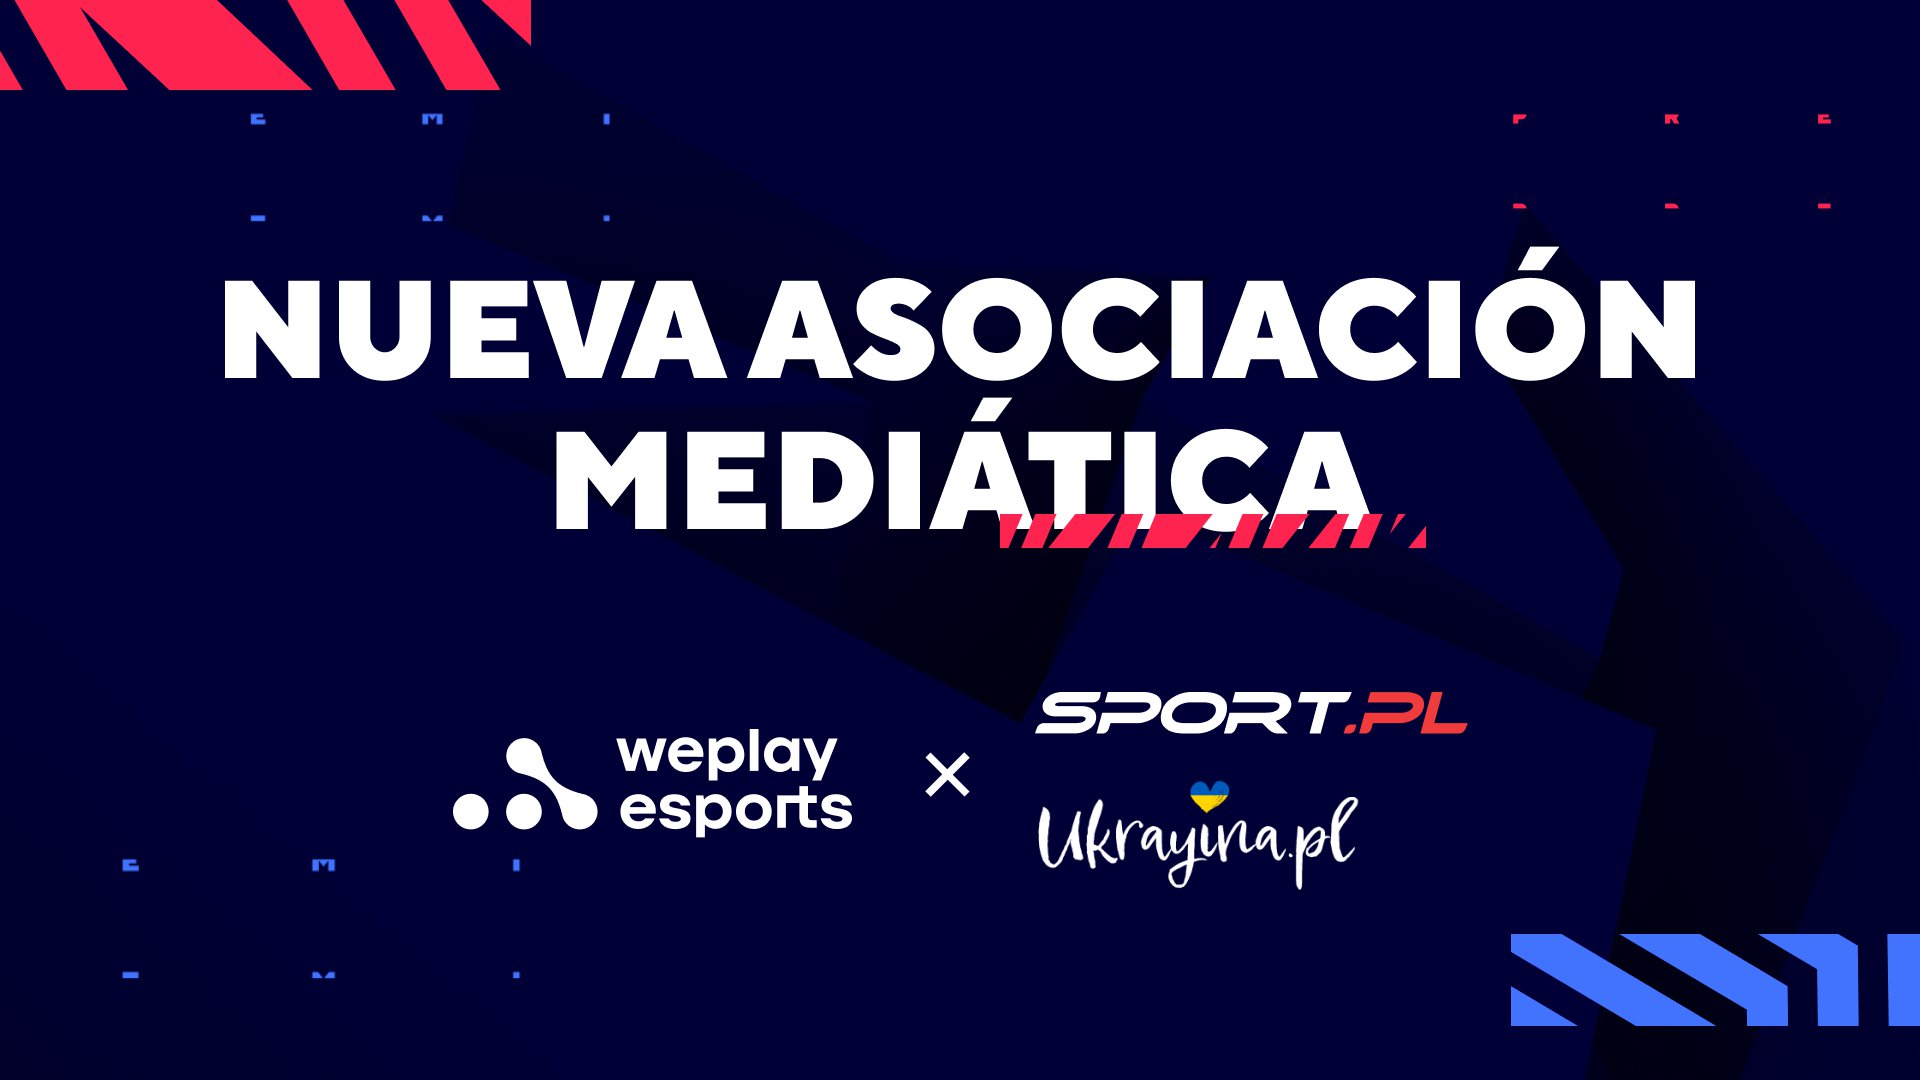 Sport.pl y Ukrayina.pl se convierten en socios mediáticos de la transmisión de WePlay Esports en ucraniano. Imagen: WePlay Holding